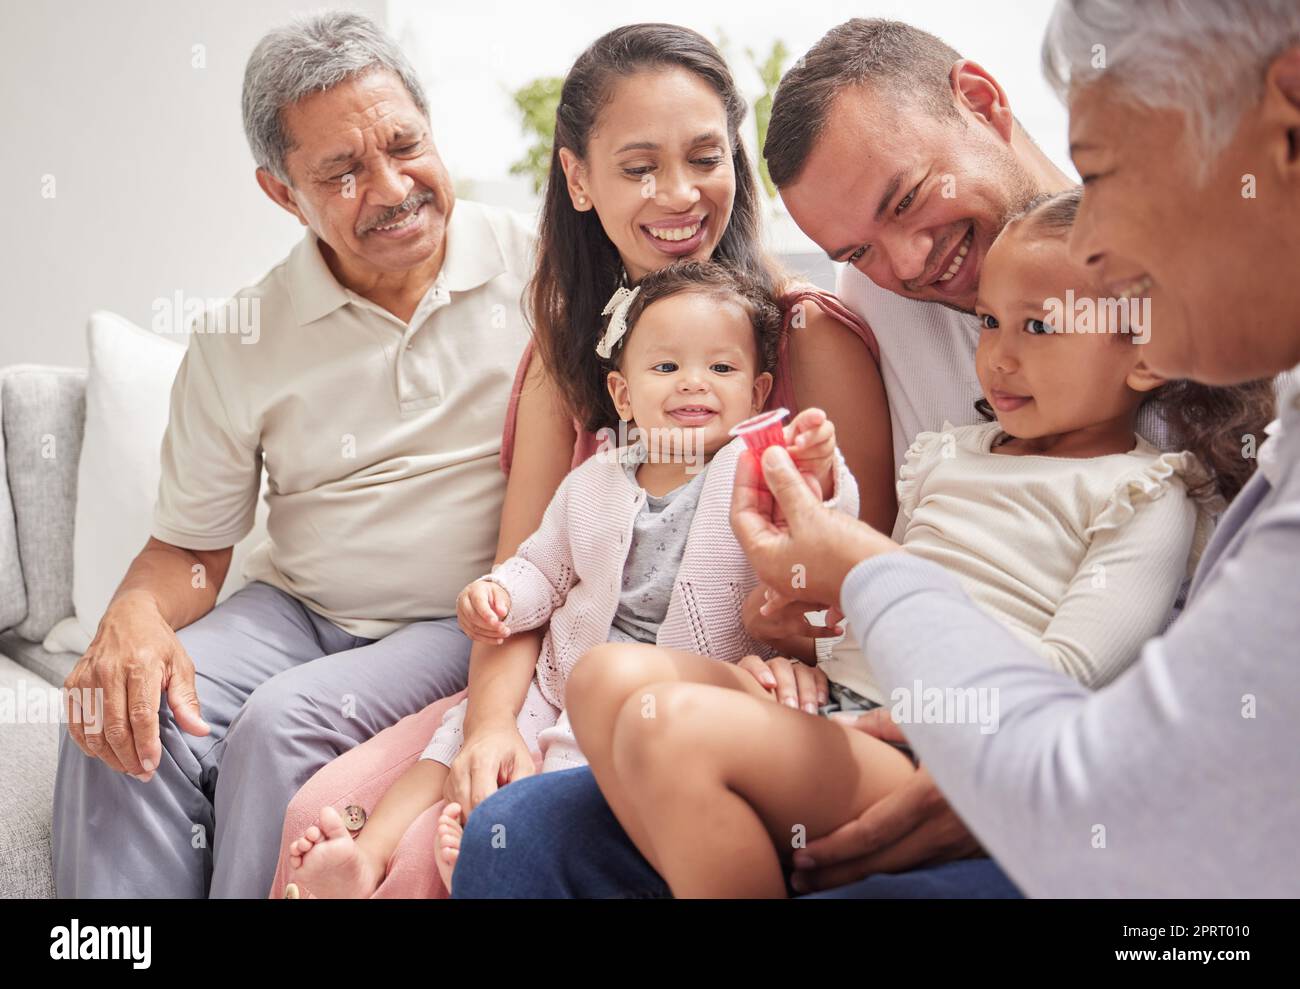 Familie, Liebe und Kinder mit Großeltern und Kindern auf einem Sofa im Wohnzimmer während eines Besuchs zu Hause. Glücklich, lächelnd und Beziehung mit einem Mann, einer Frau und Verwandten, die zusammen in einem Haus sitzen Stockfoto